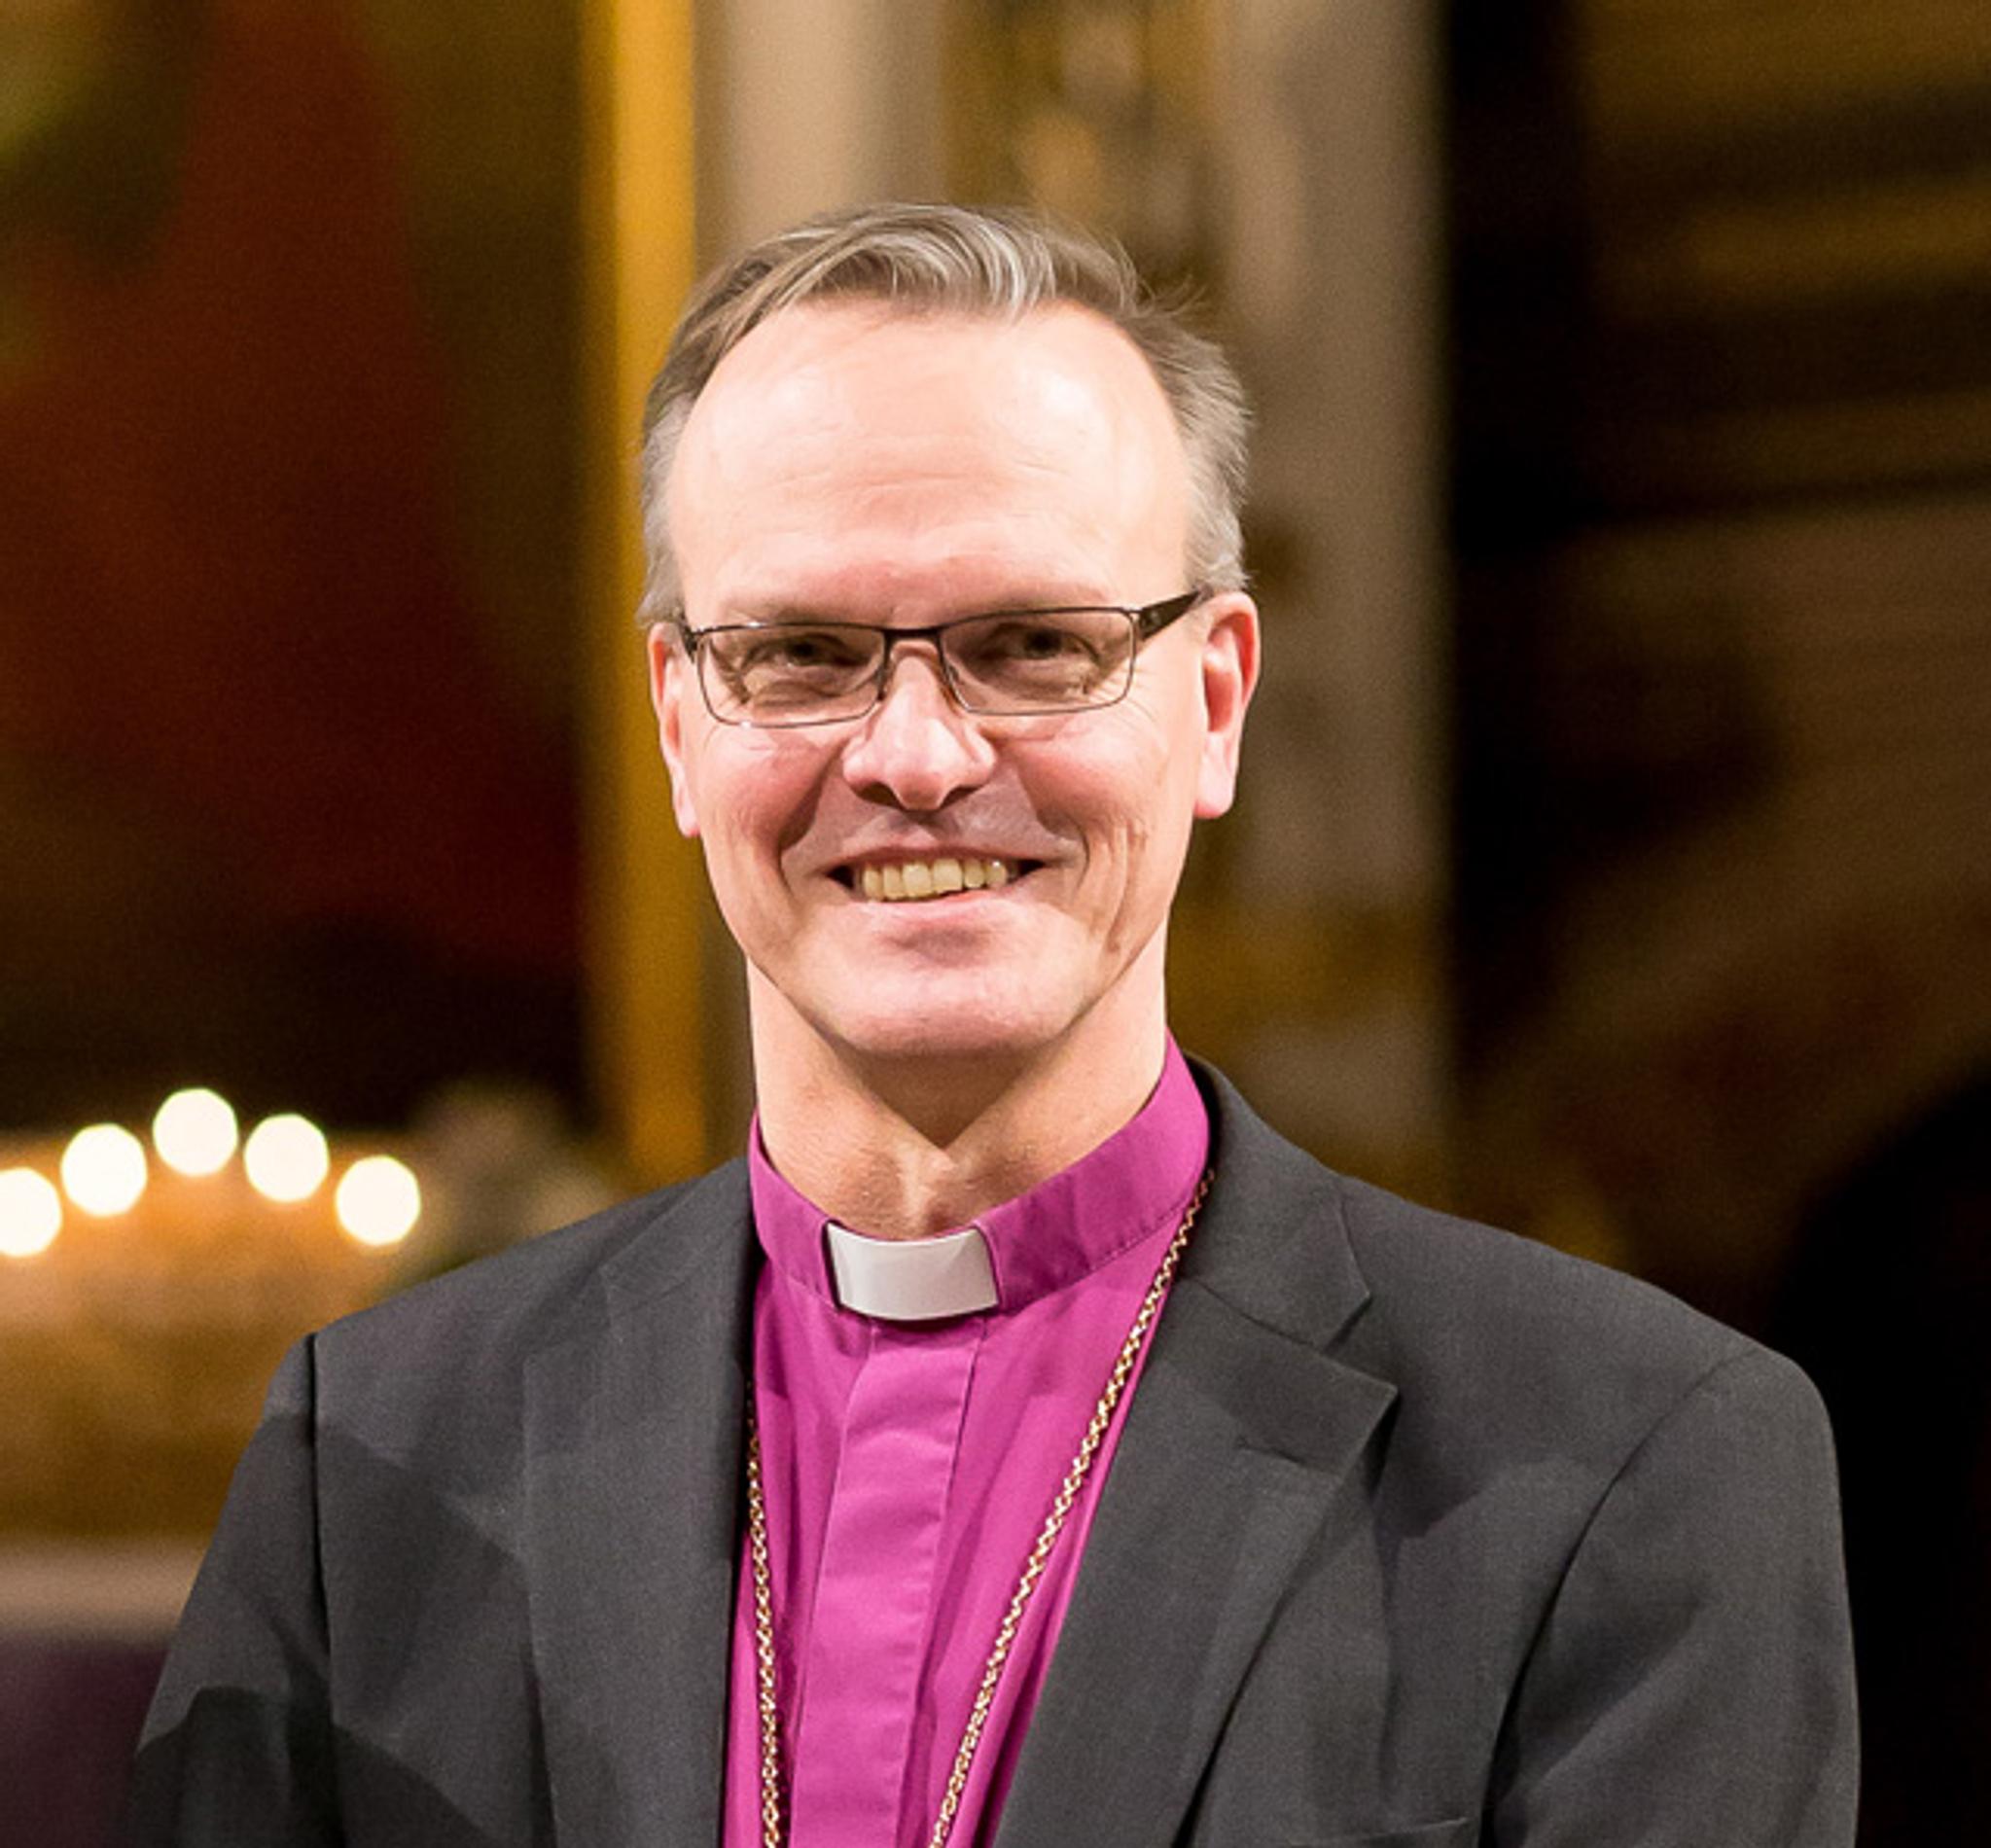 Uusi arkkipiispa Tapio Luoma laulaa tangoa karaokessa | Apu